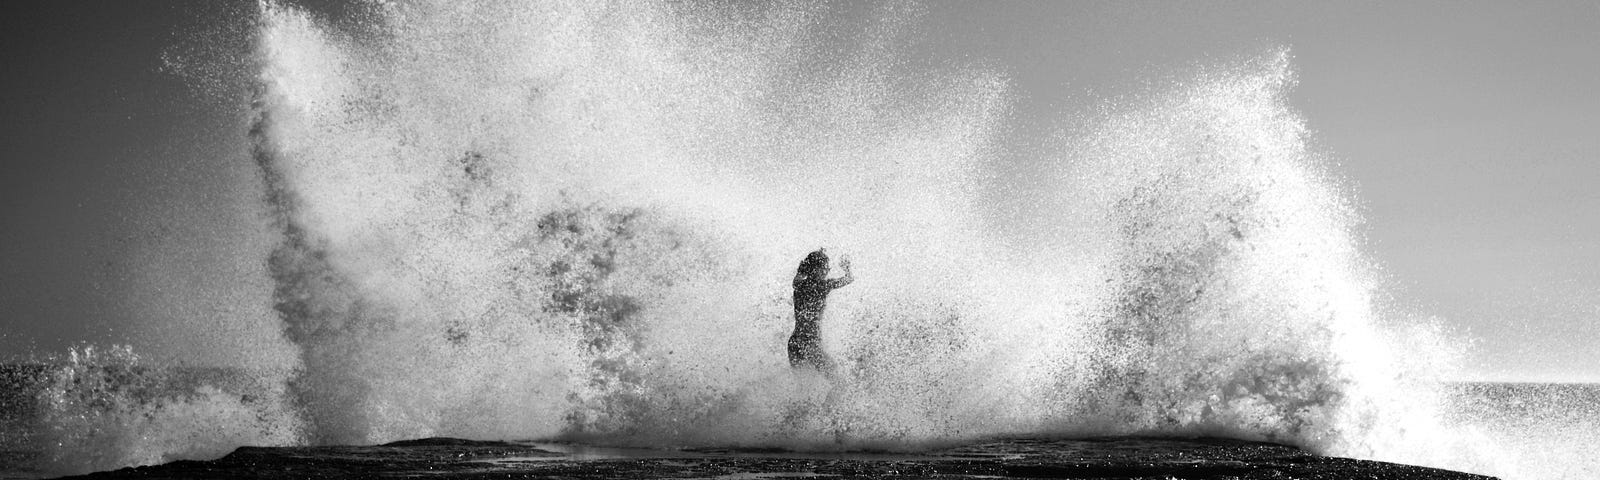 Gigantic wave crashing over person, black and white, nostalgic feel